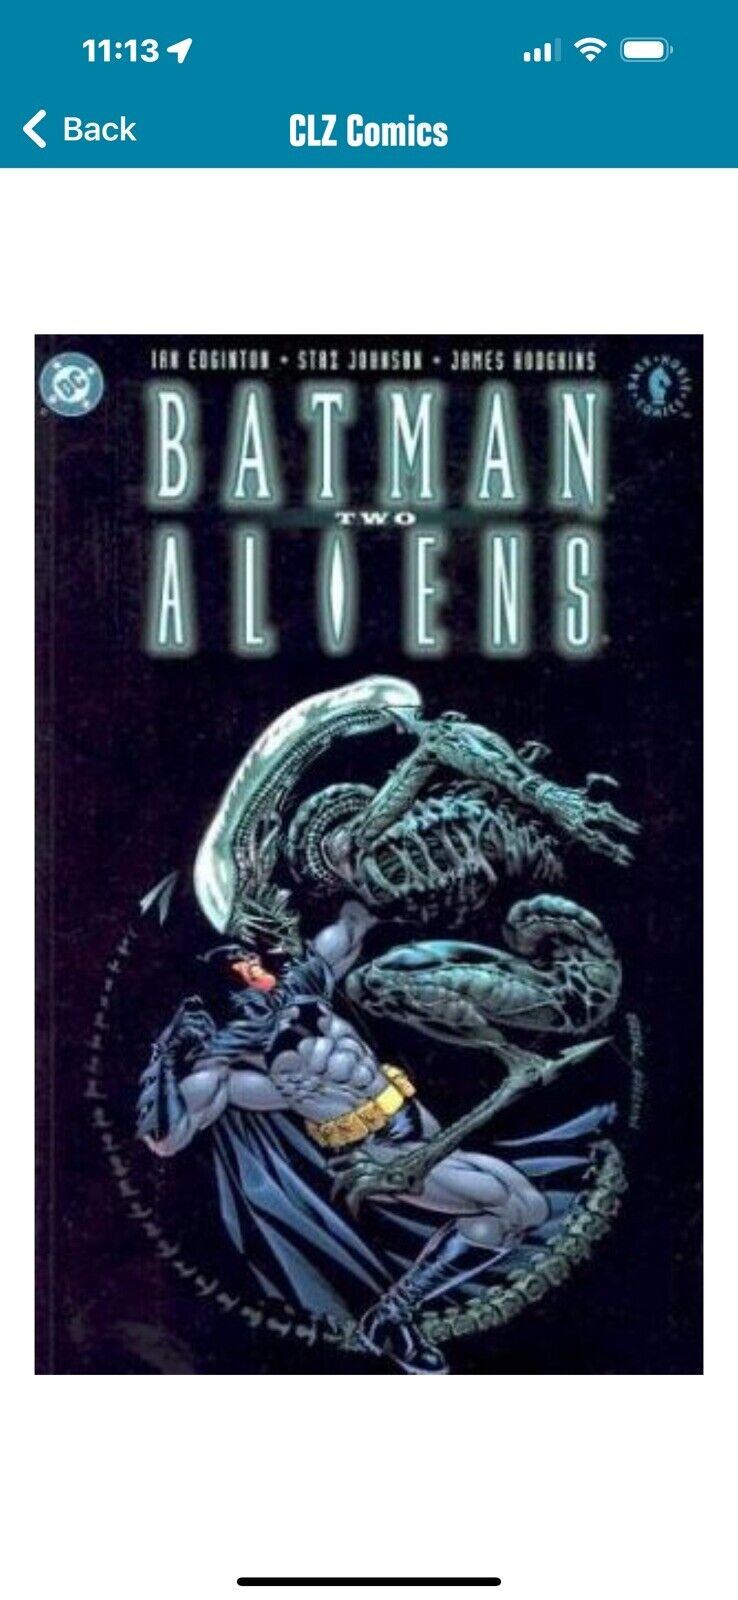 1-3 Batman / Aliens Two (DC Comics October 2003) plus a paperback.  no returns